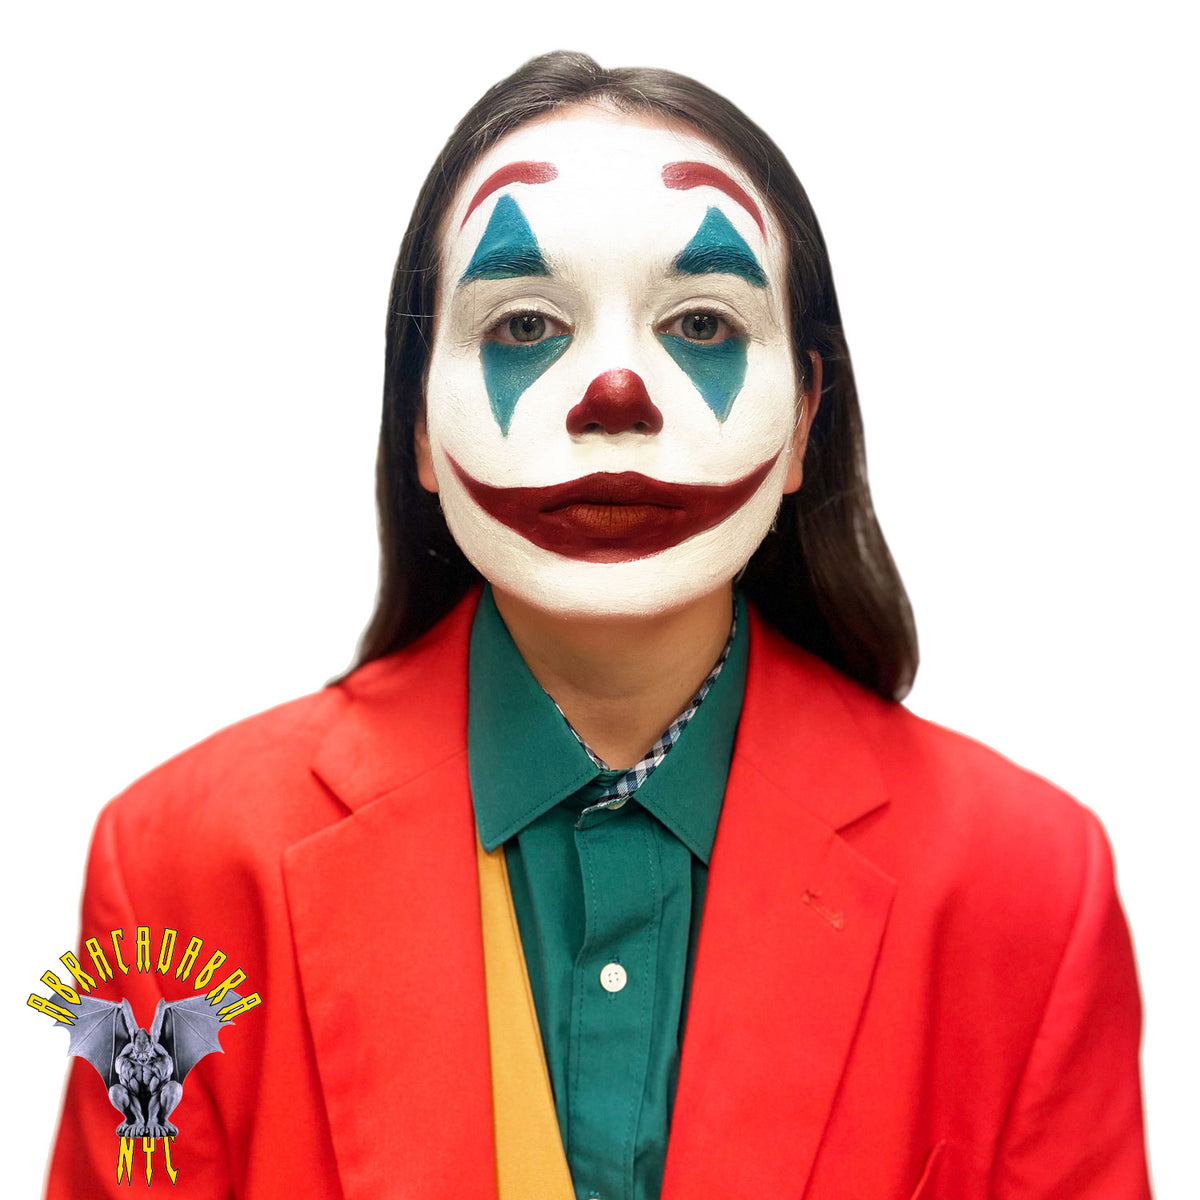 The Joker Makeup Service